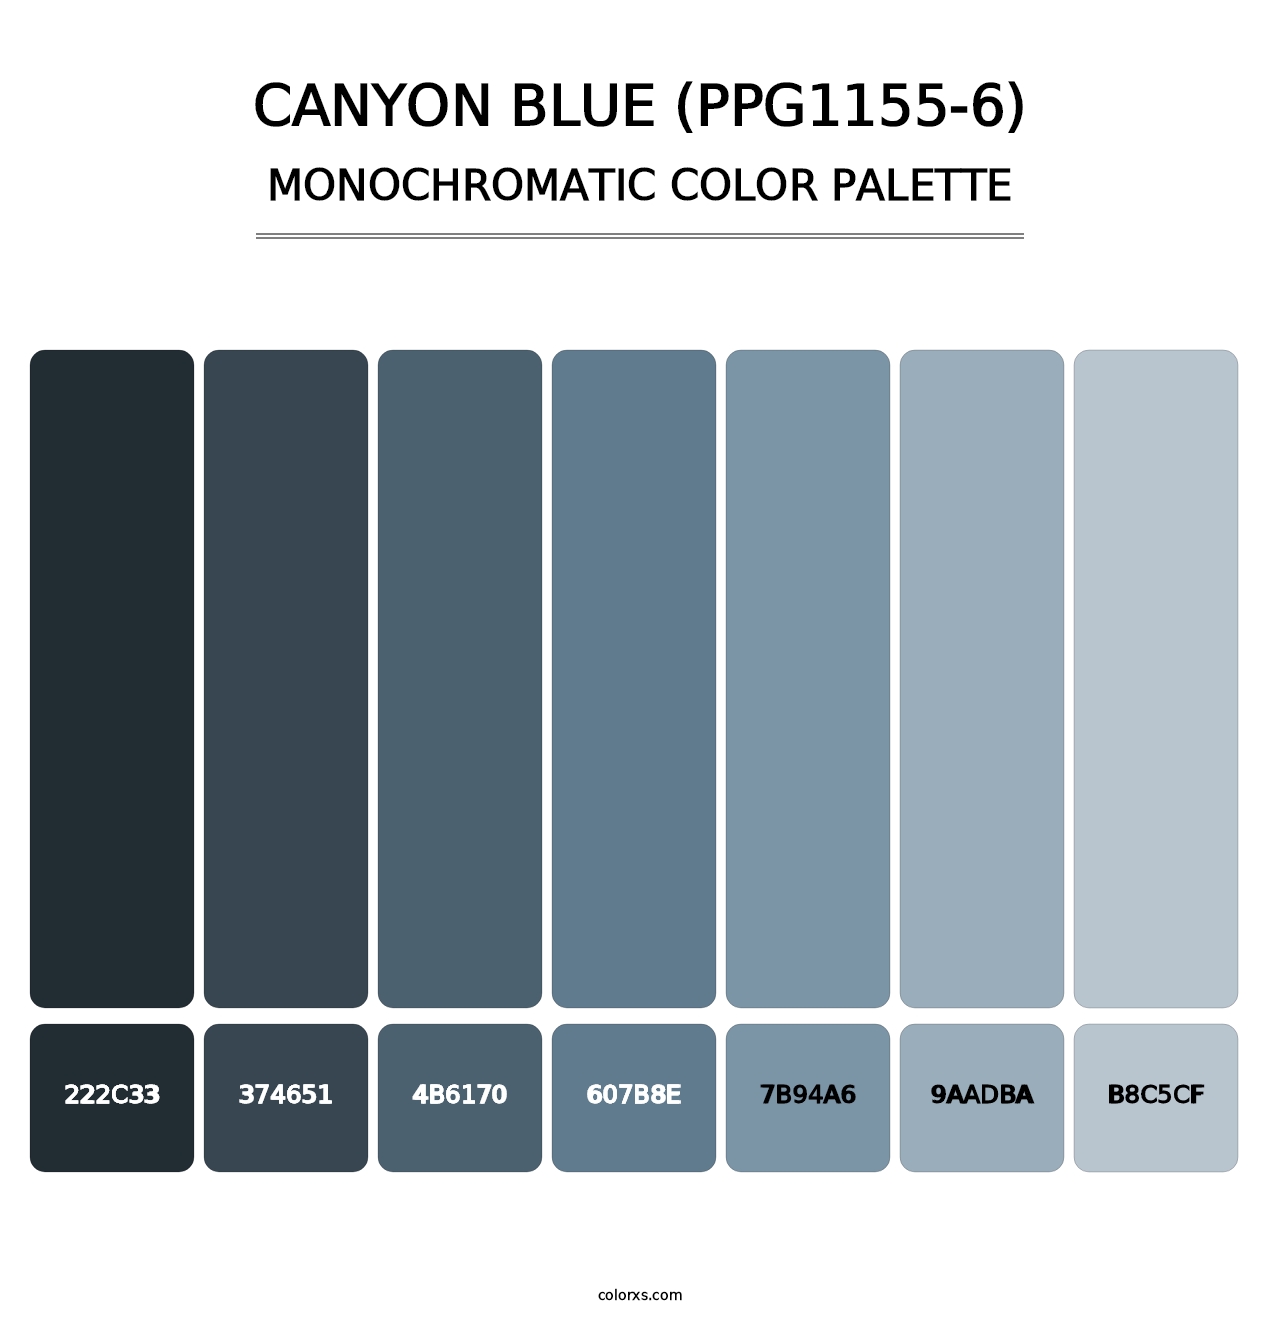 Canyon Blue (PPG1155-6) - Monochromatic Color Palette